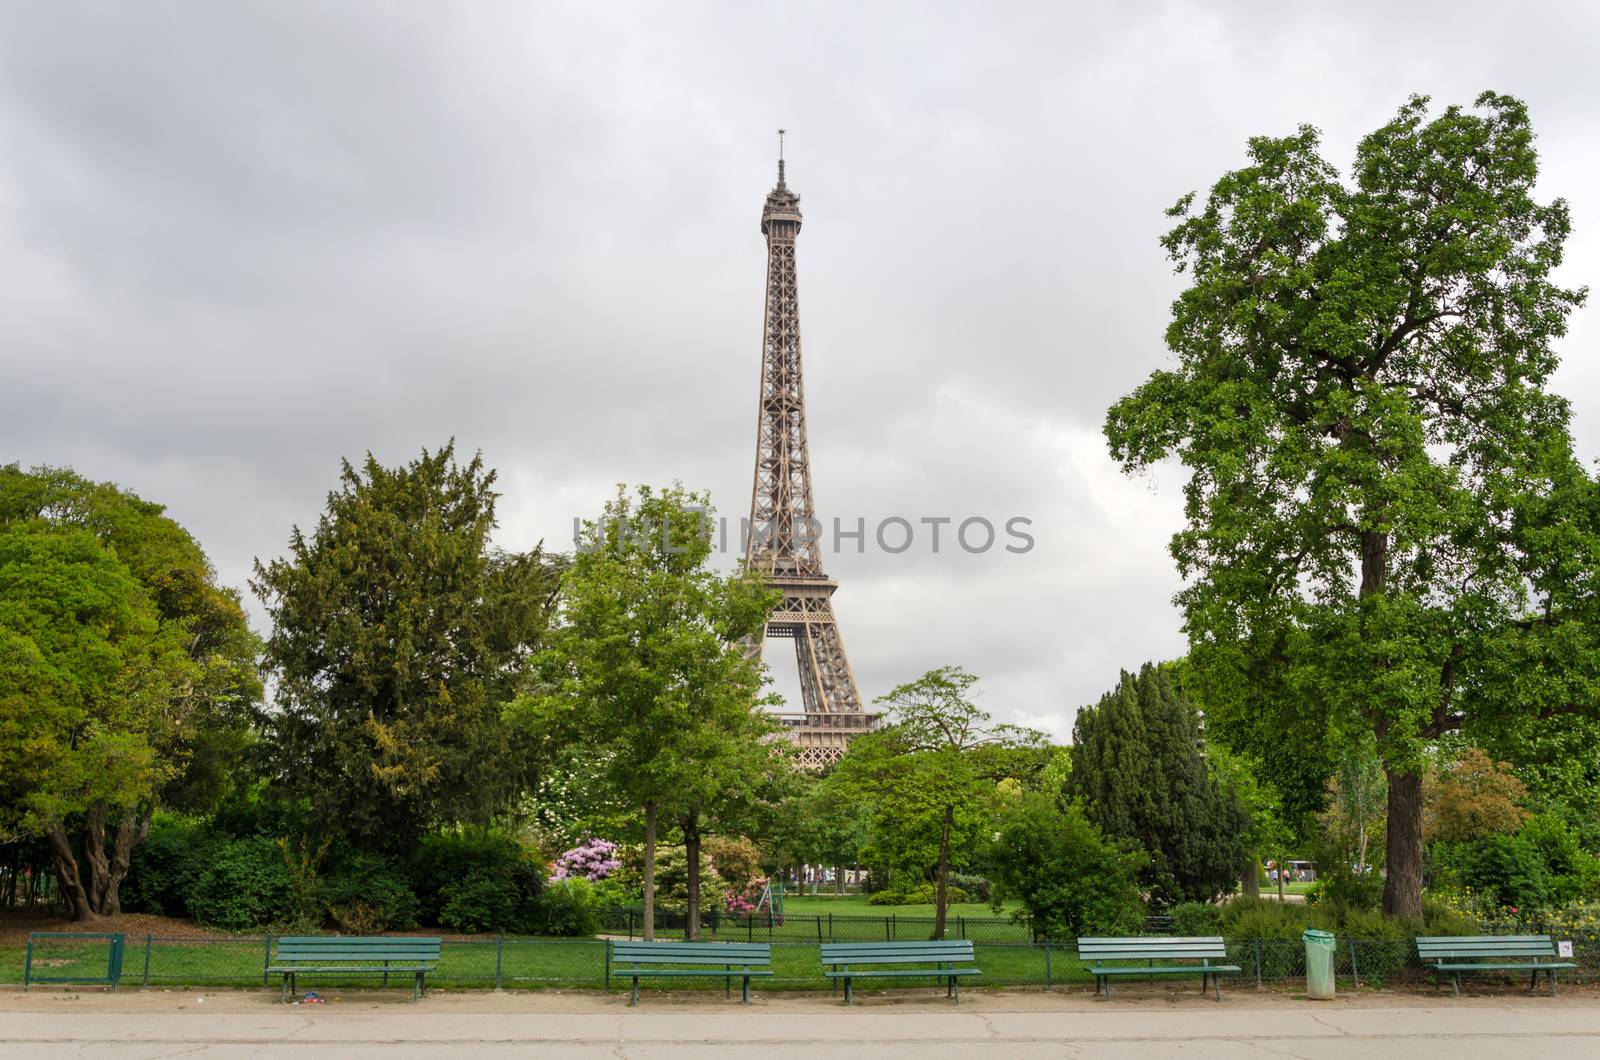 Eiffel Tower at Champ de Mars Park in Paris, France 